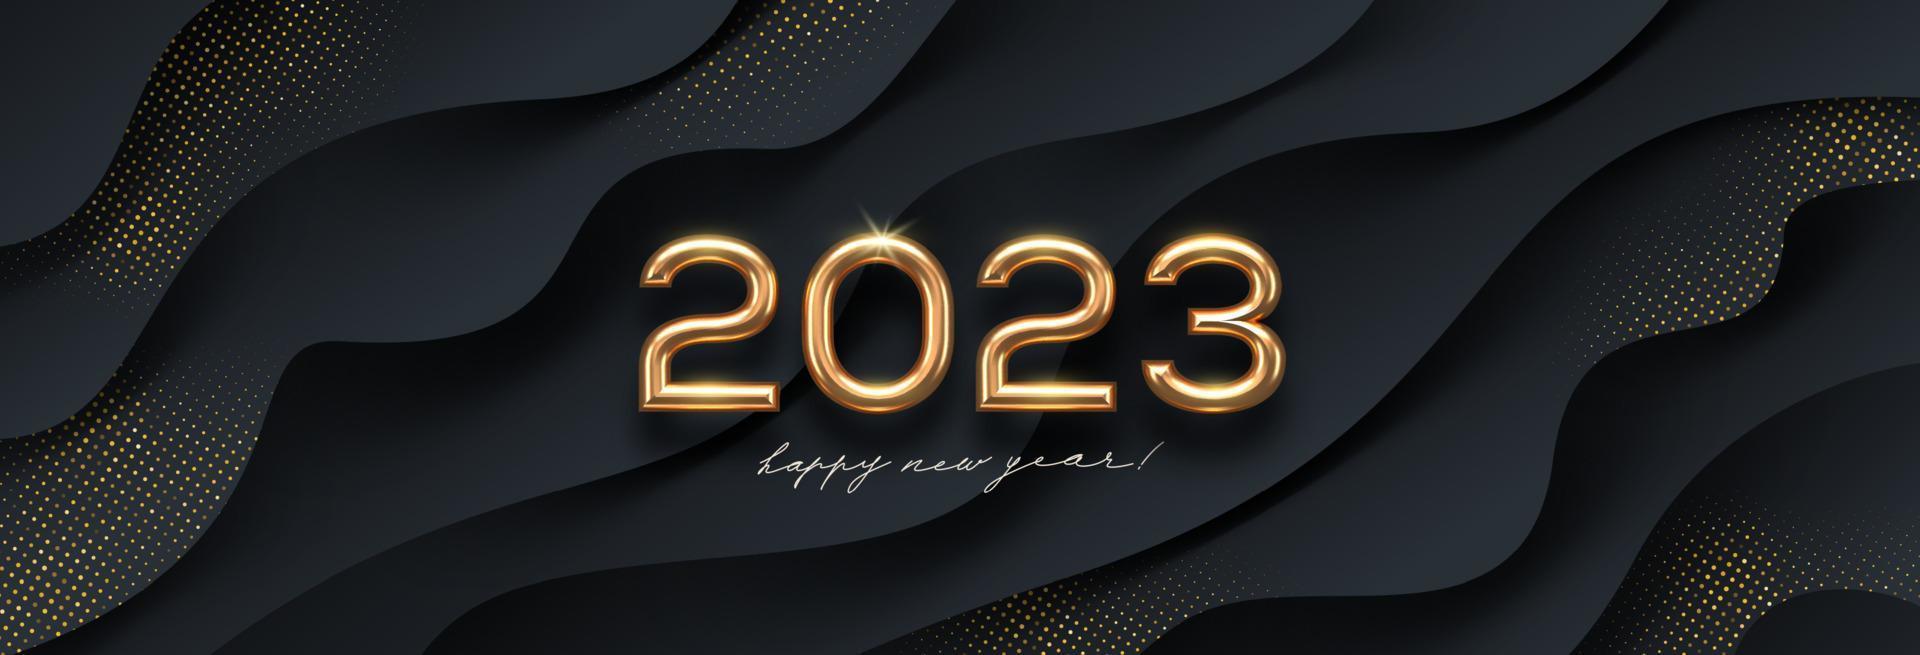 2023 ny år gyllene logotyp på abstrakt svart vågor bakgrund. hälsning design med realistisk guld metall siffra av år. design för hälsning kort, inbjudan, kalender, etc. vektor